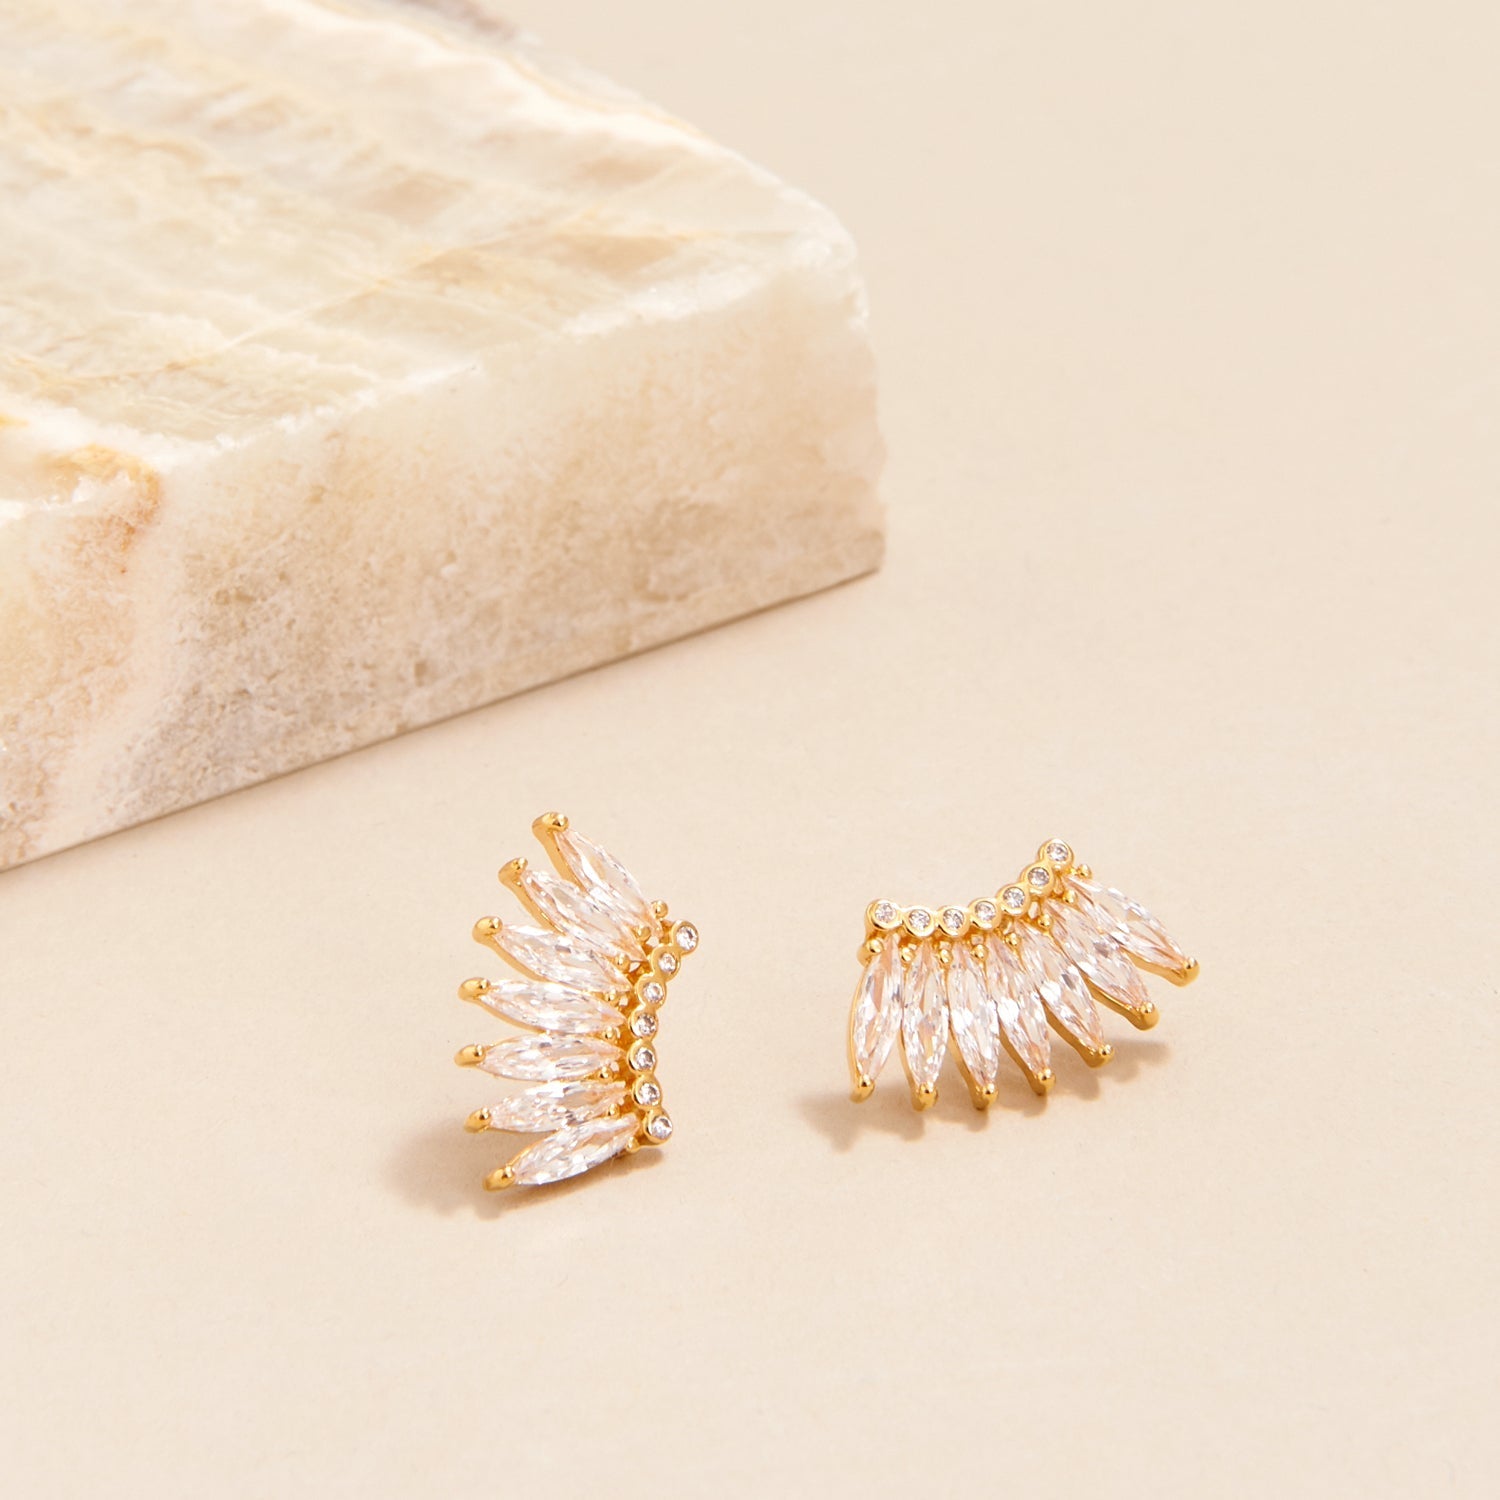 Petite Crystal Madeline Earrings Gold by Mignonne Gavigan